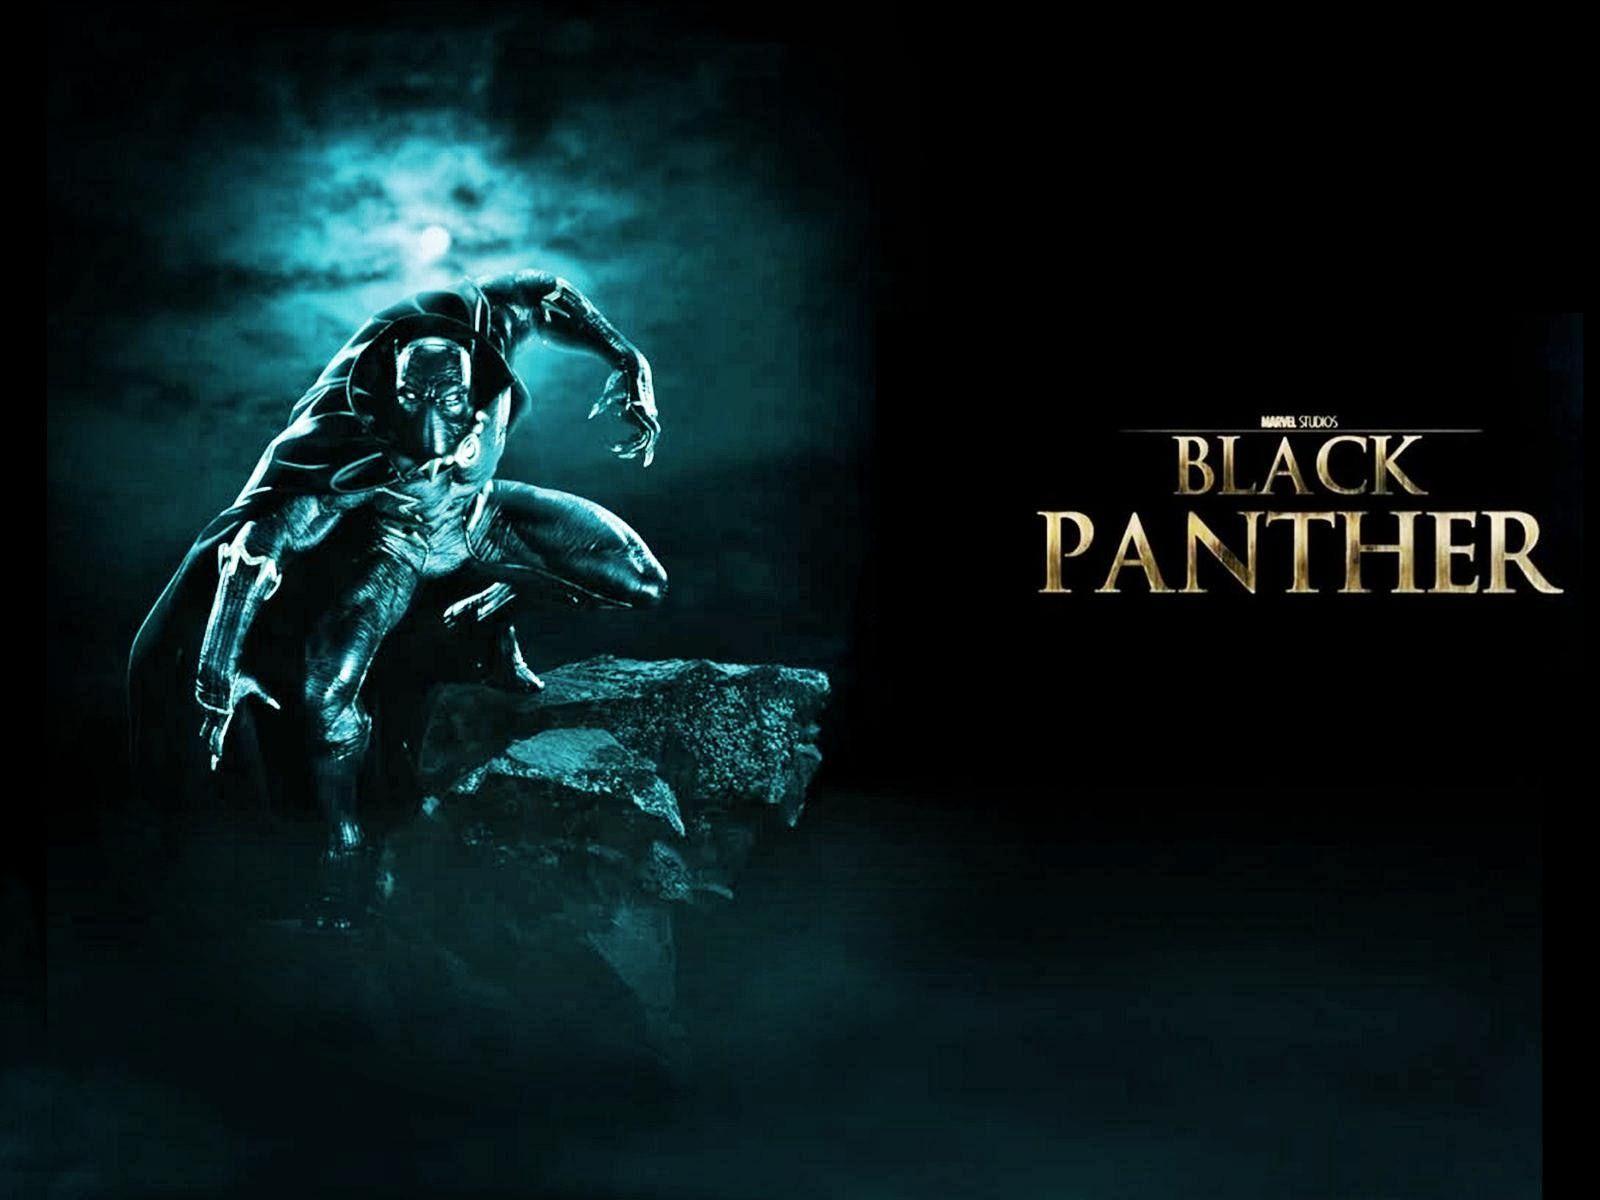 Black Panther Wallpaper, 100% Full HDQ Black Panther Photo